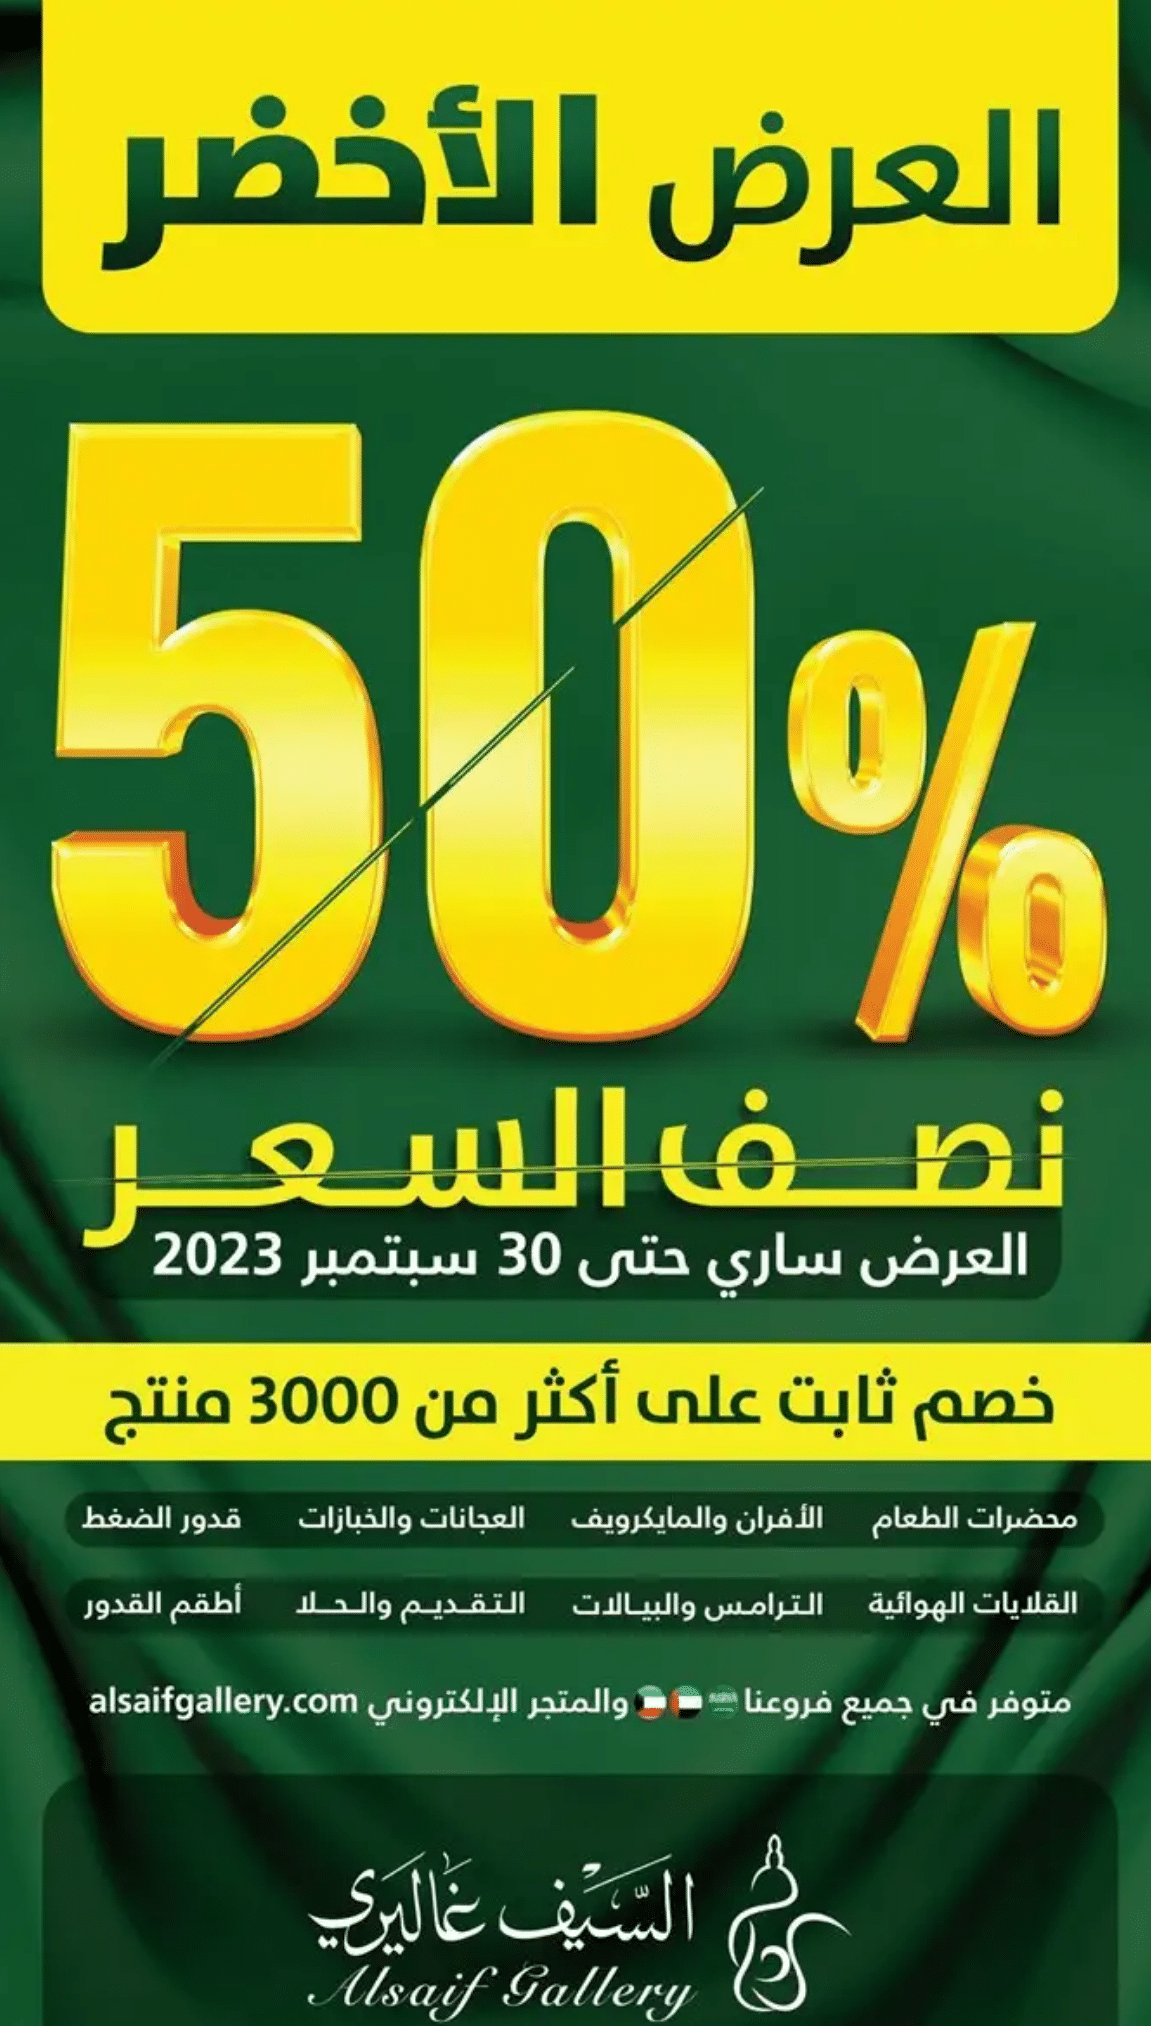 عروض السيف غاليري اليوم الوطني السعودي 2023 وخصومات هائلة تصل لـ 50% بنصف السعر